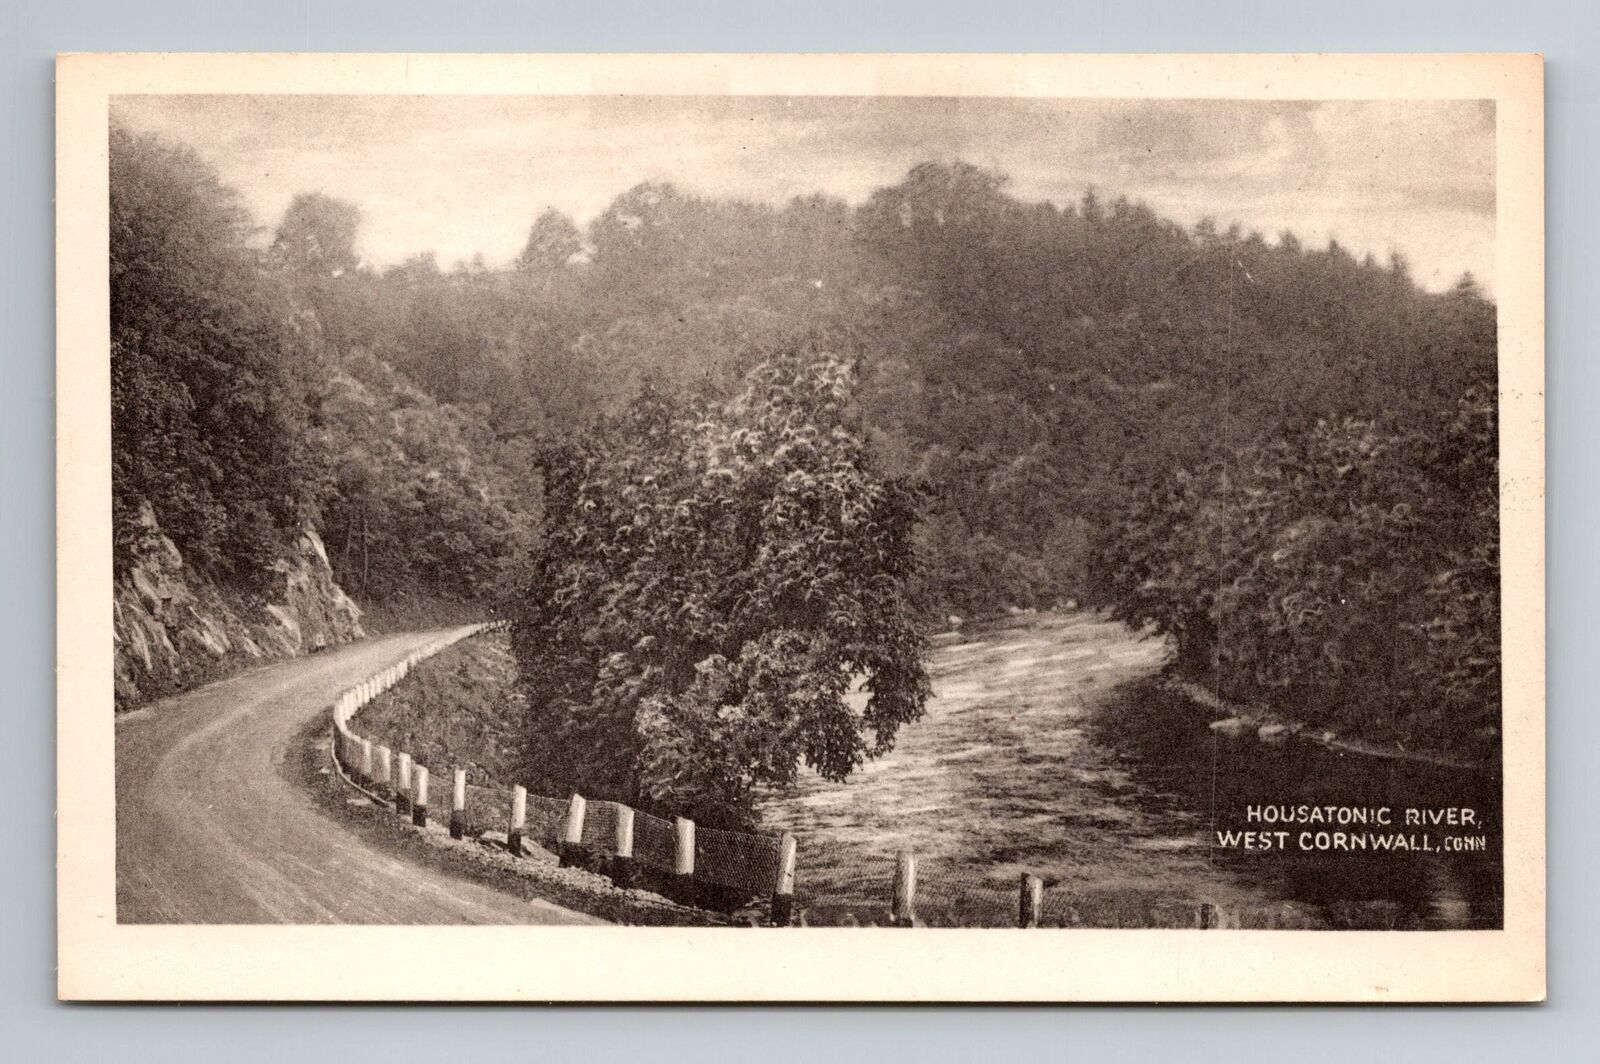 West Cornwall CT-Connecticut, Housatonic River Vintage Souvenir Postcard